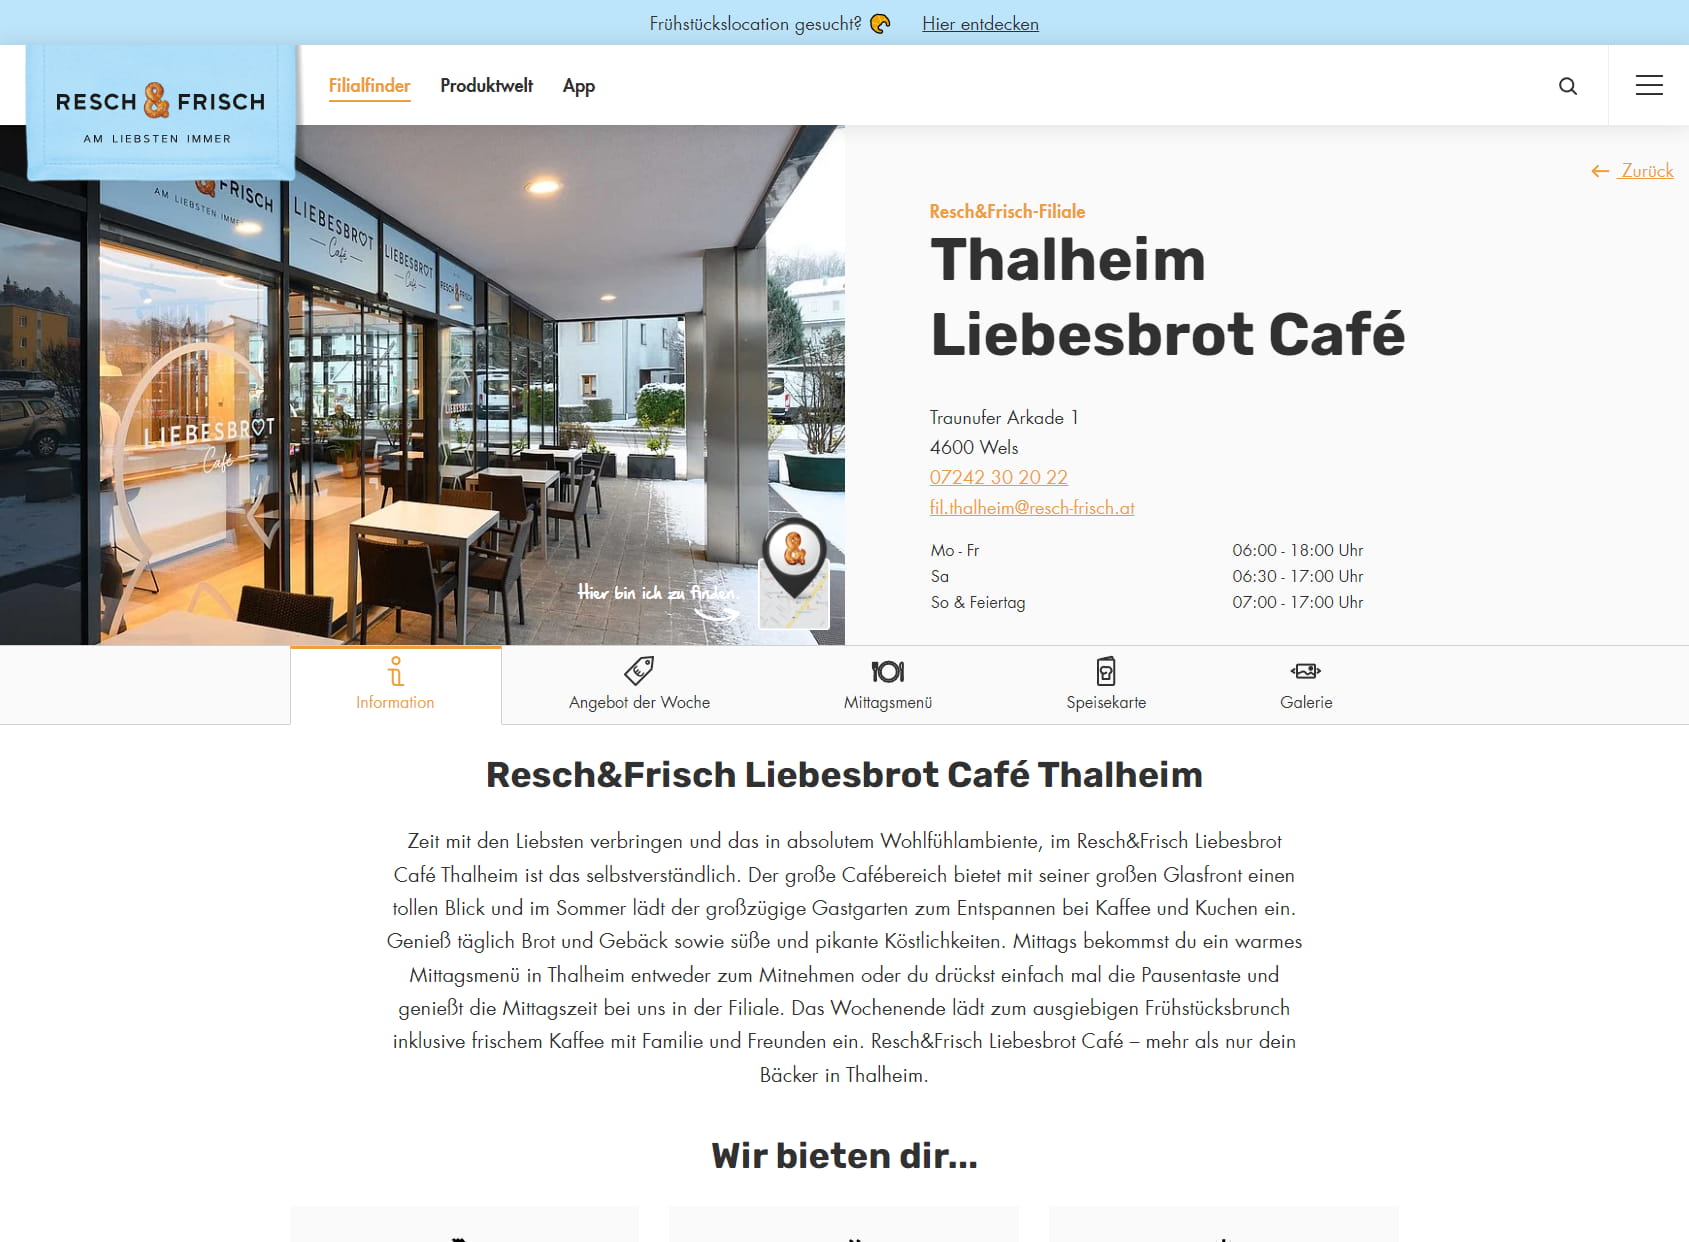 Resch&Frisch Liebesbrot Café Thalheim